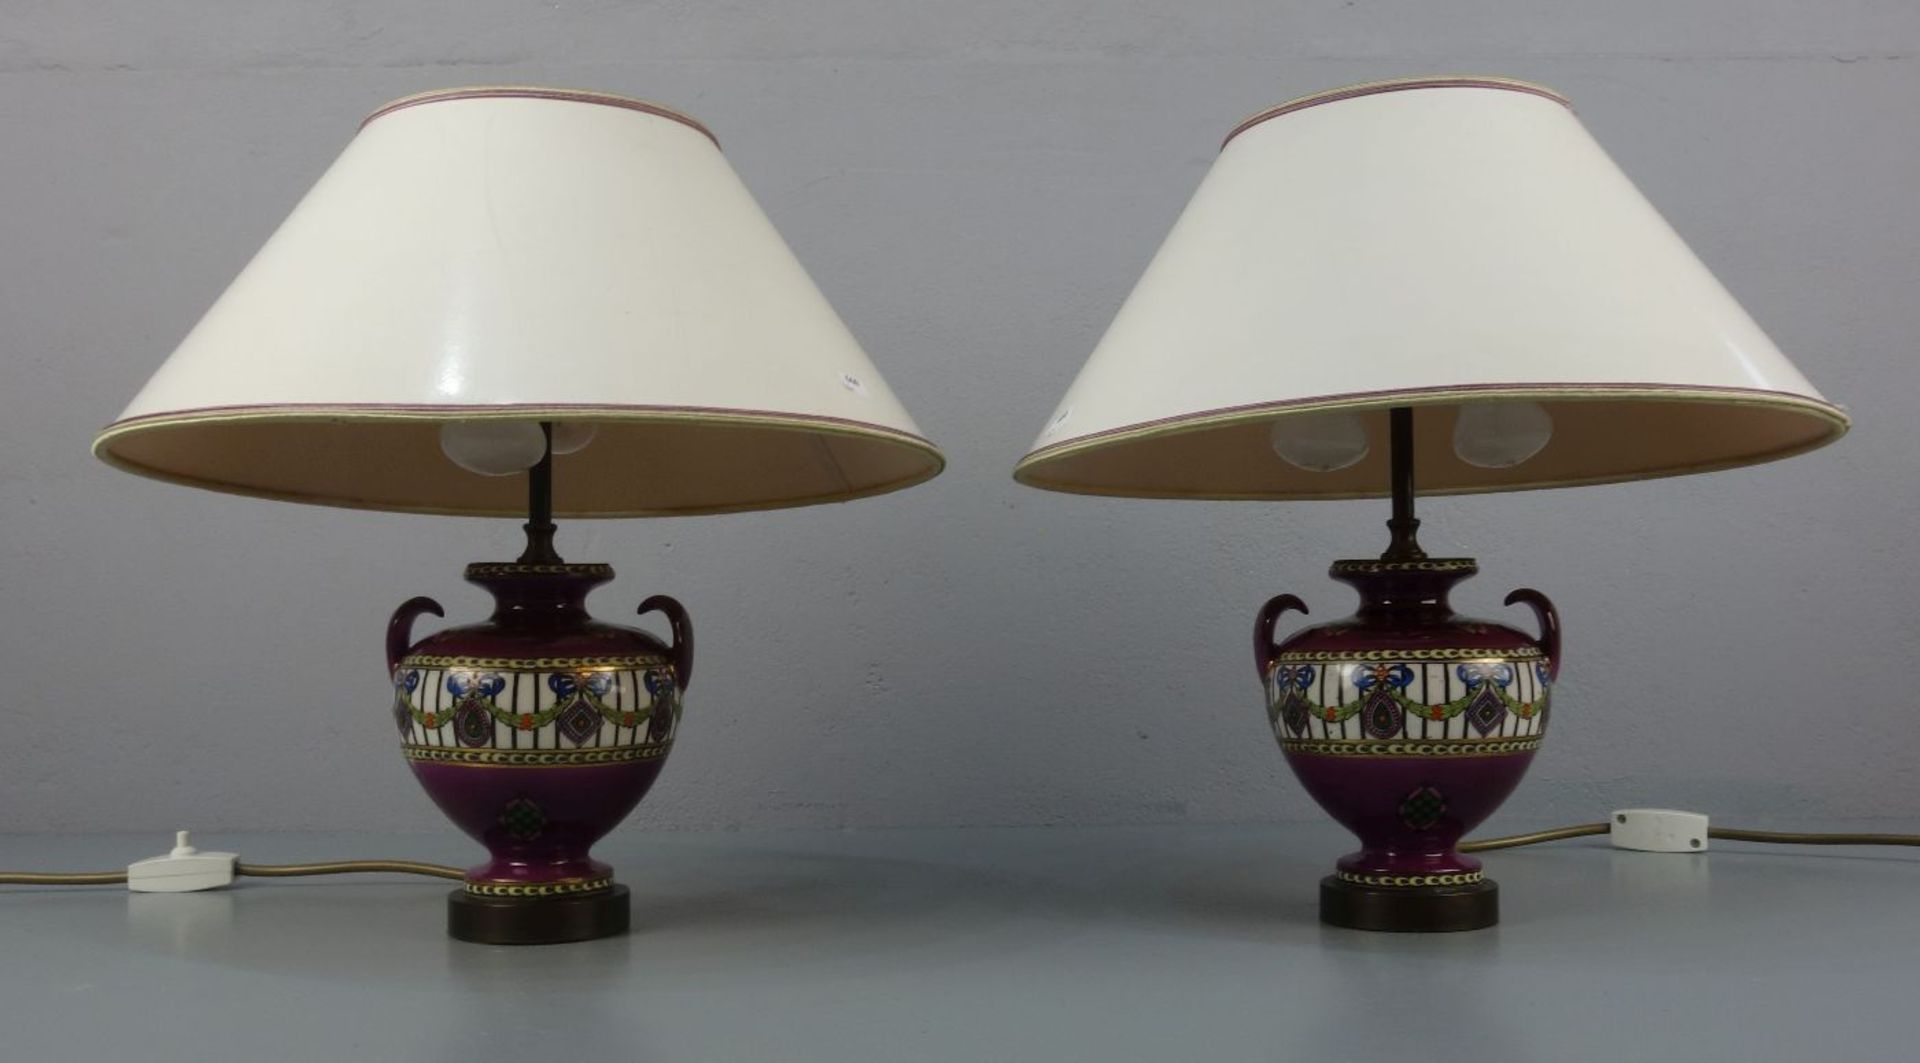 PAAR TISCH-LAMPEN / NACHTTISCH-LAMPEN/ two table lamps, Porzellan mit Metallpostament und - Image 2 of 3